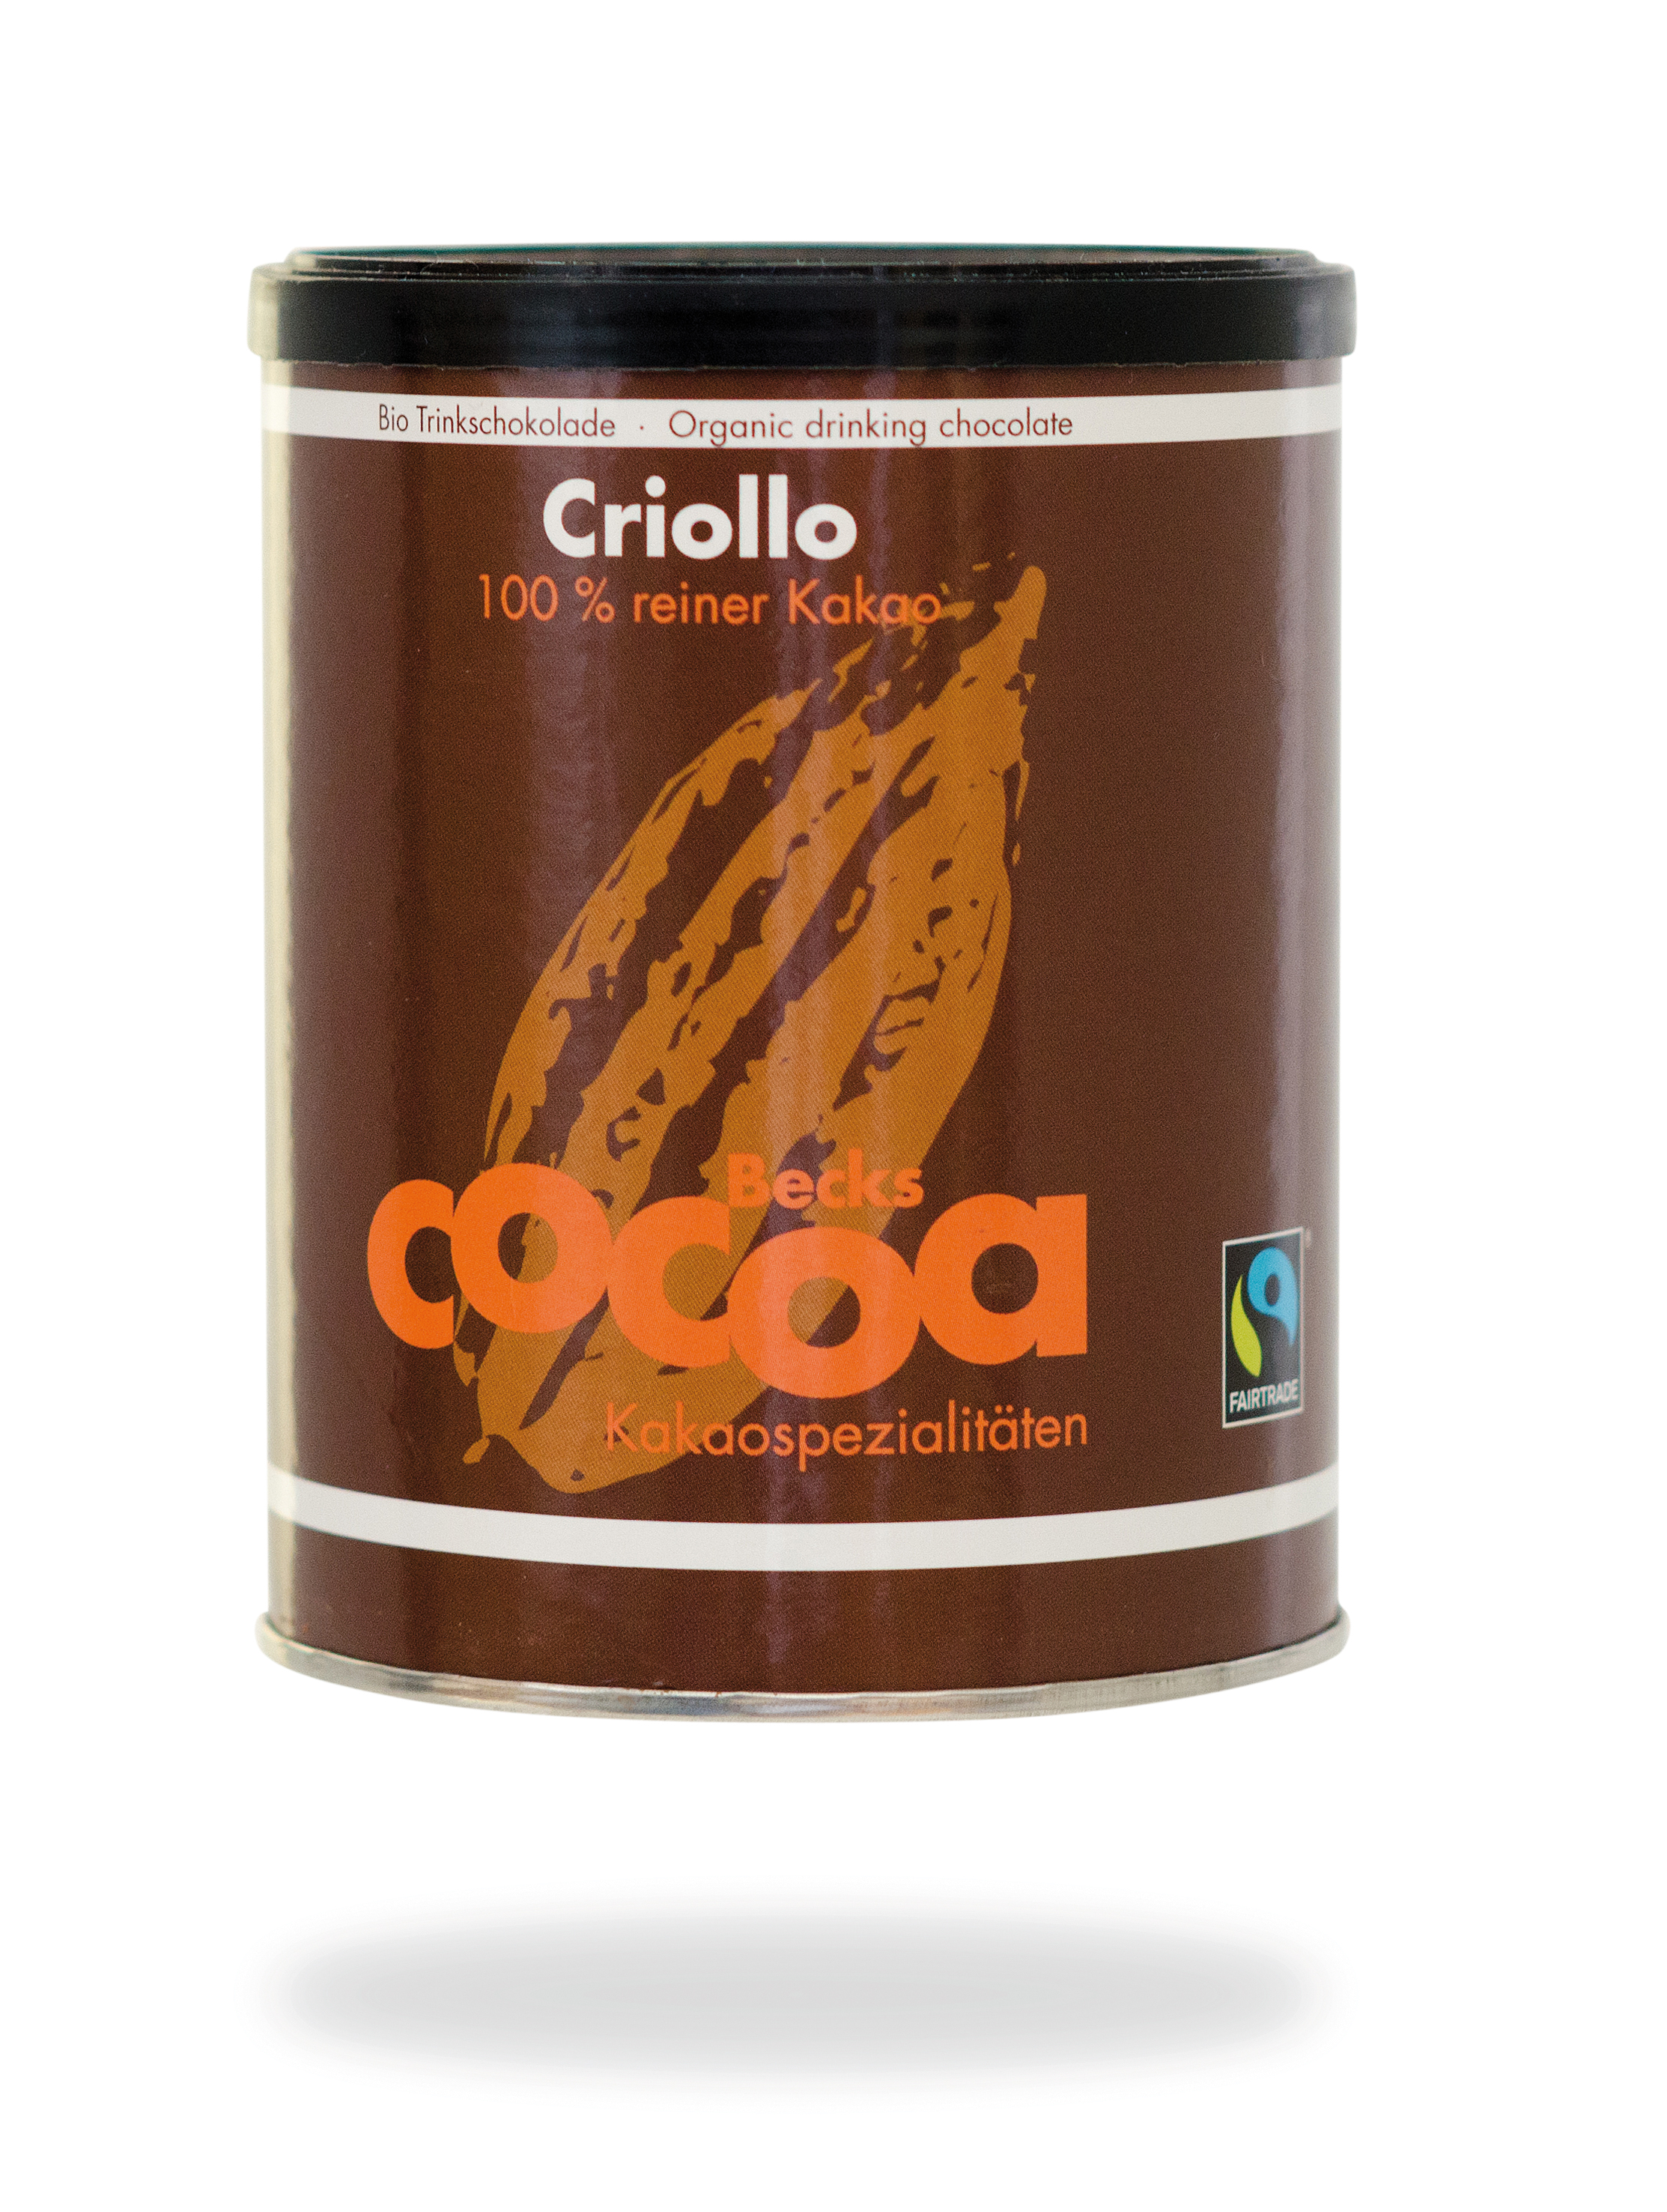 Becks Cocoa Criollo-